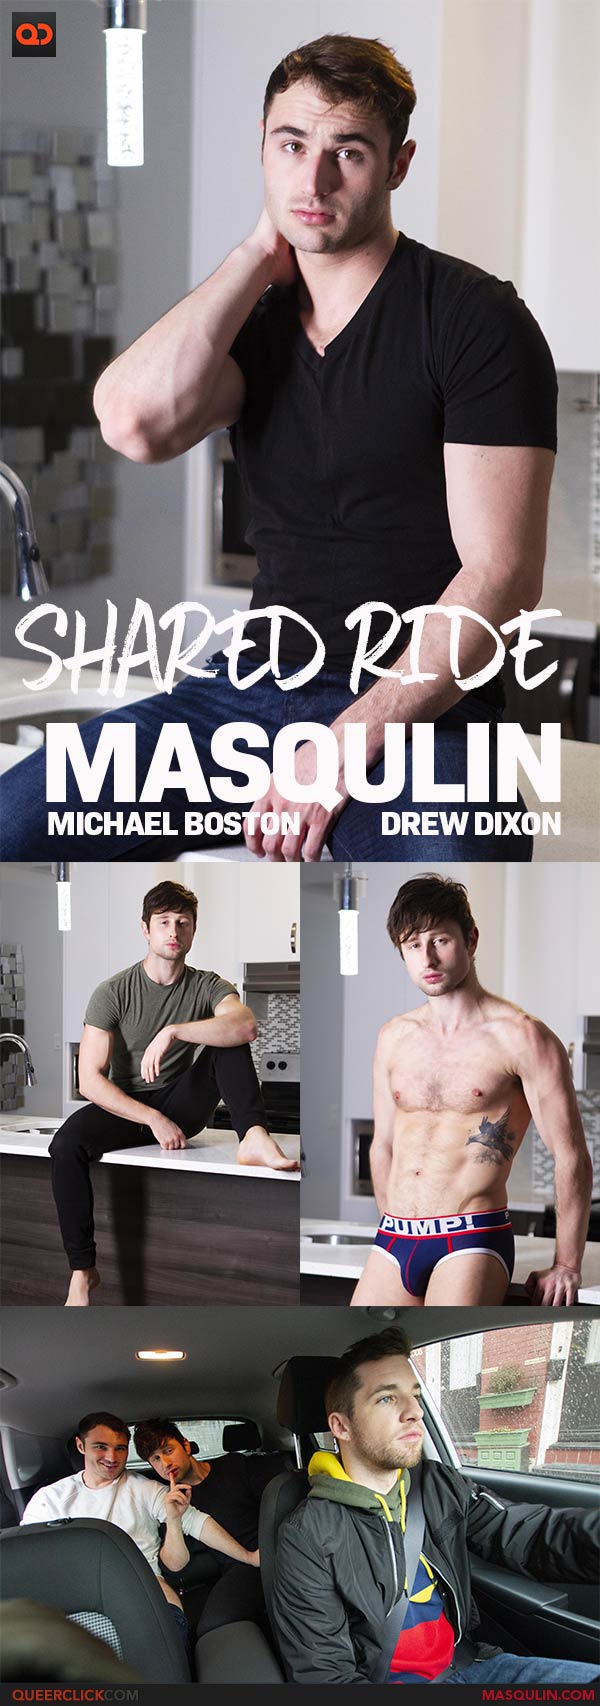 Masqulin:  Drew Dixon and Michael Boston